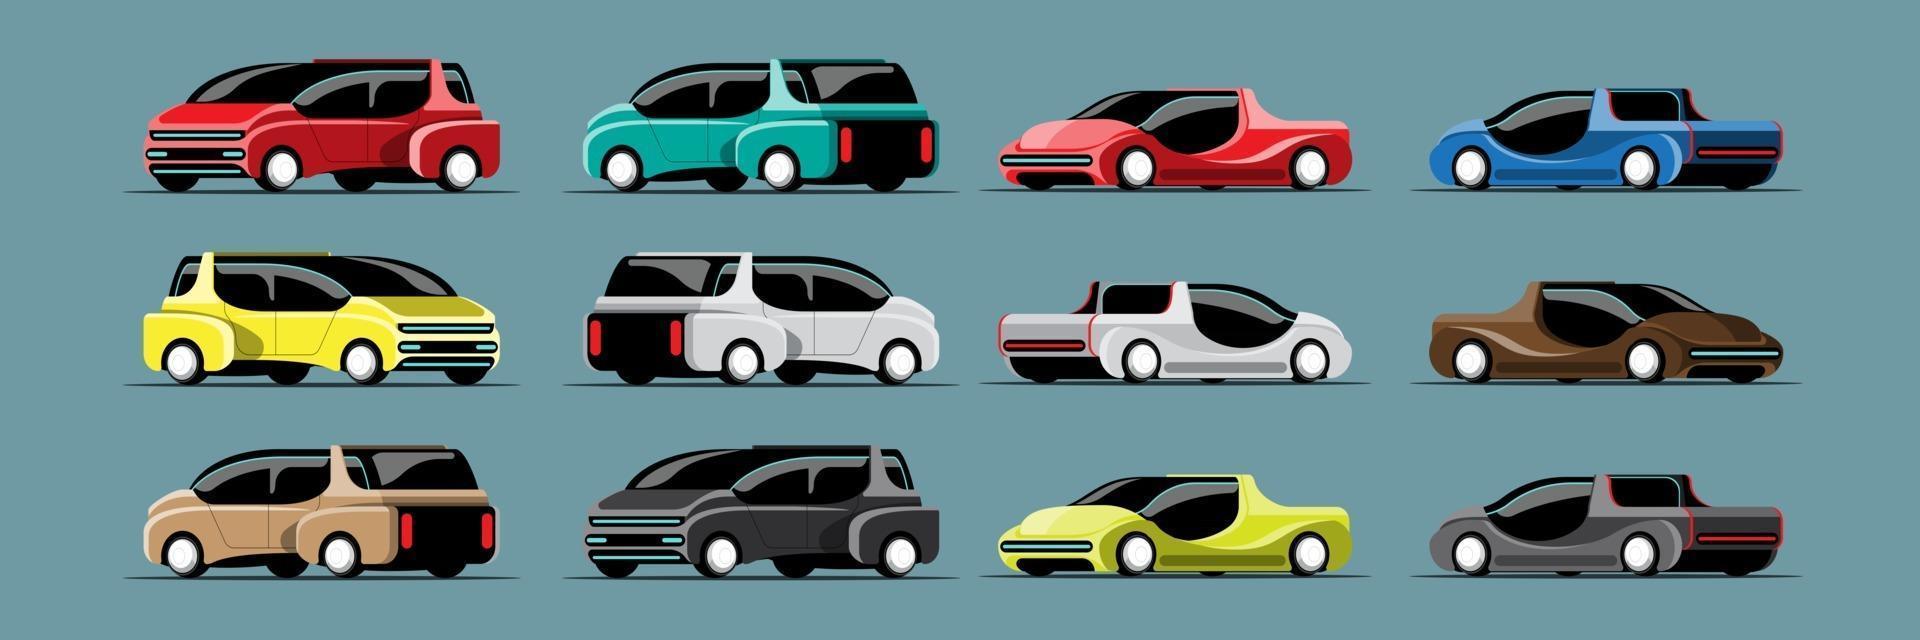 Set of Hitech cars in modern design vector